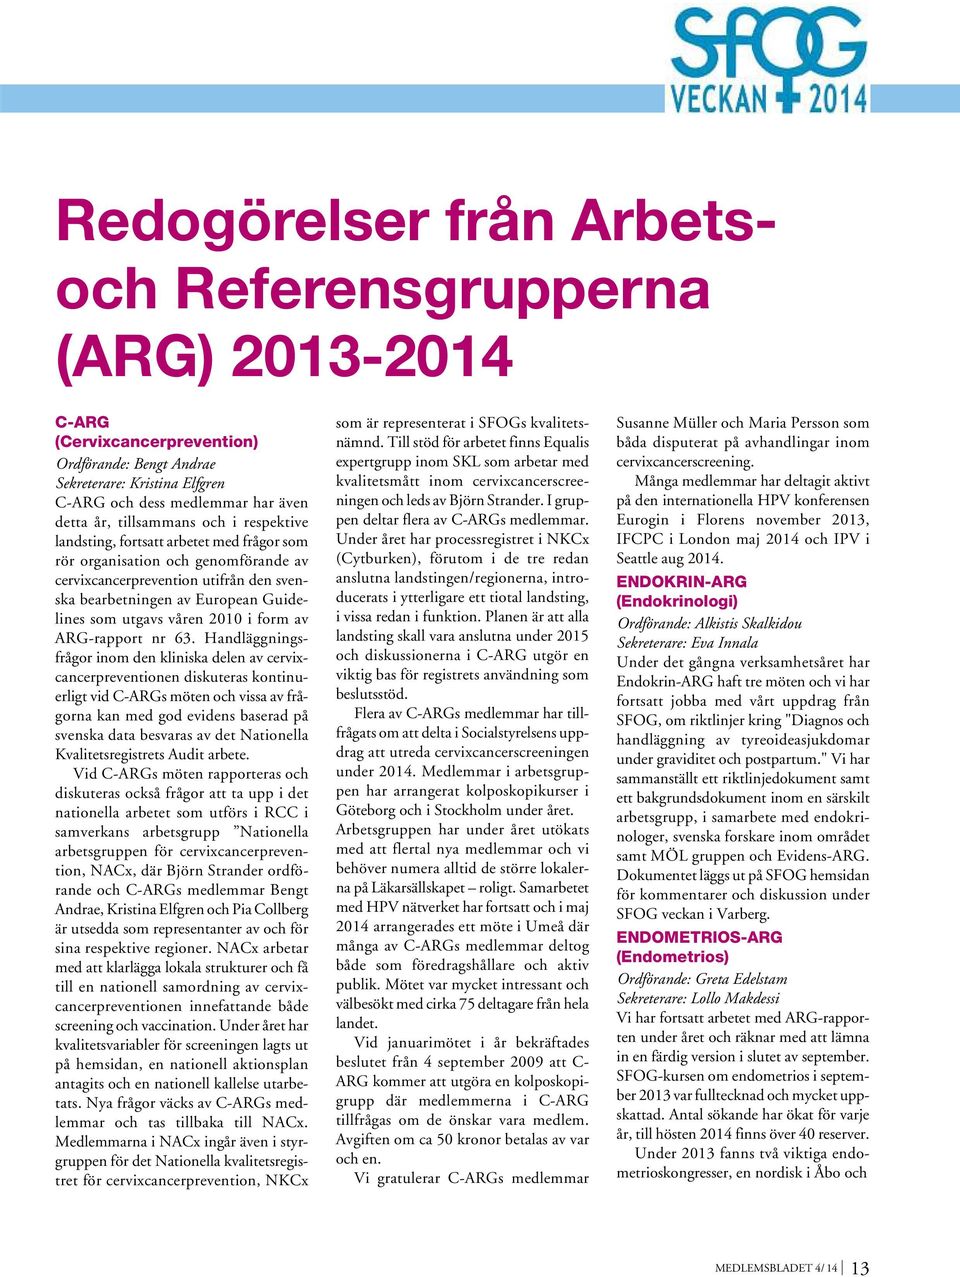 våren 2010 i form av ARG-rapport nr 63.